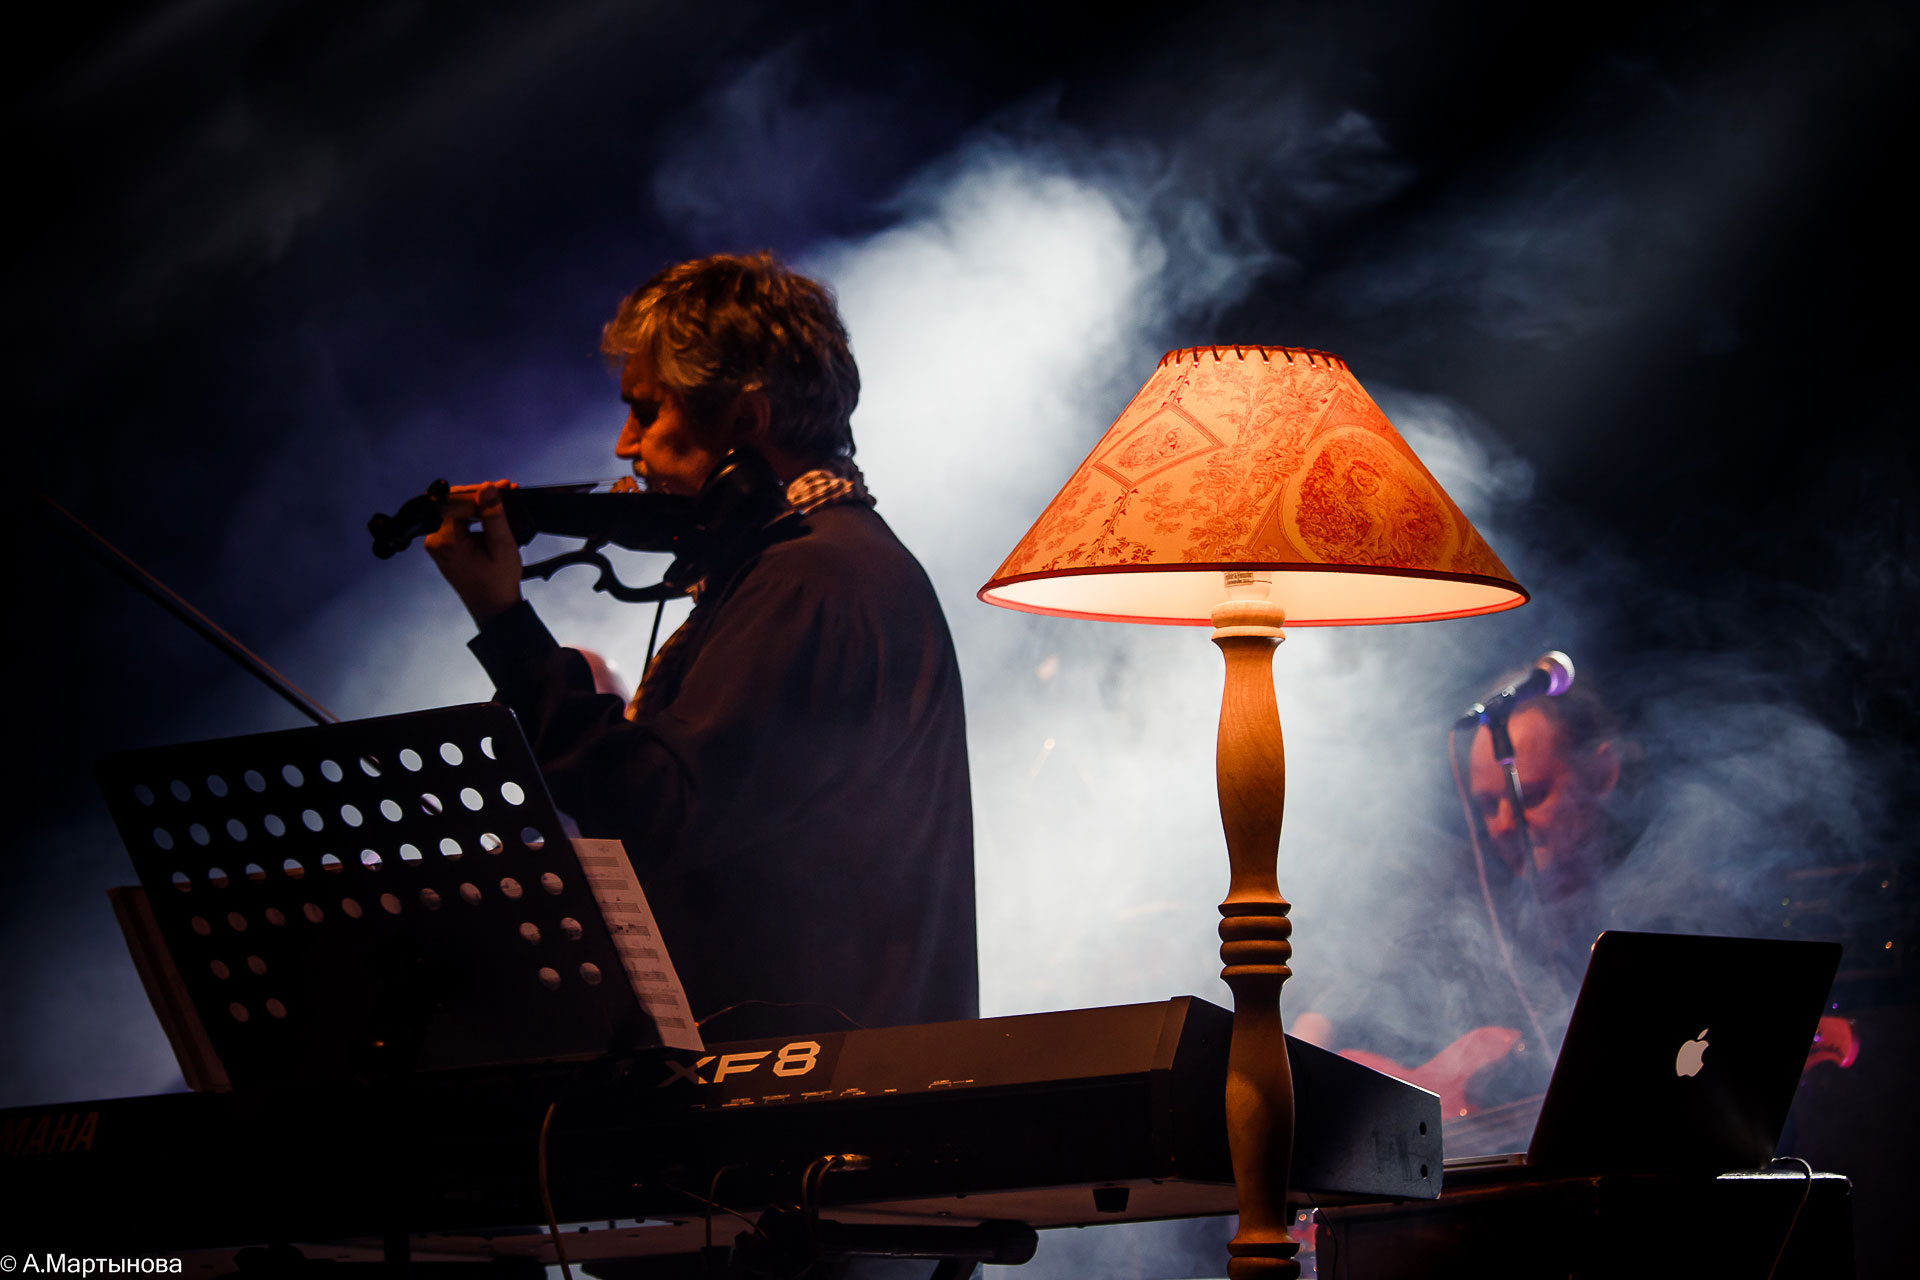 Борис Гребенщиков и группа "Аквариум" с концертом в Тамбове 2017 год